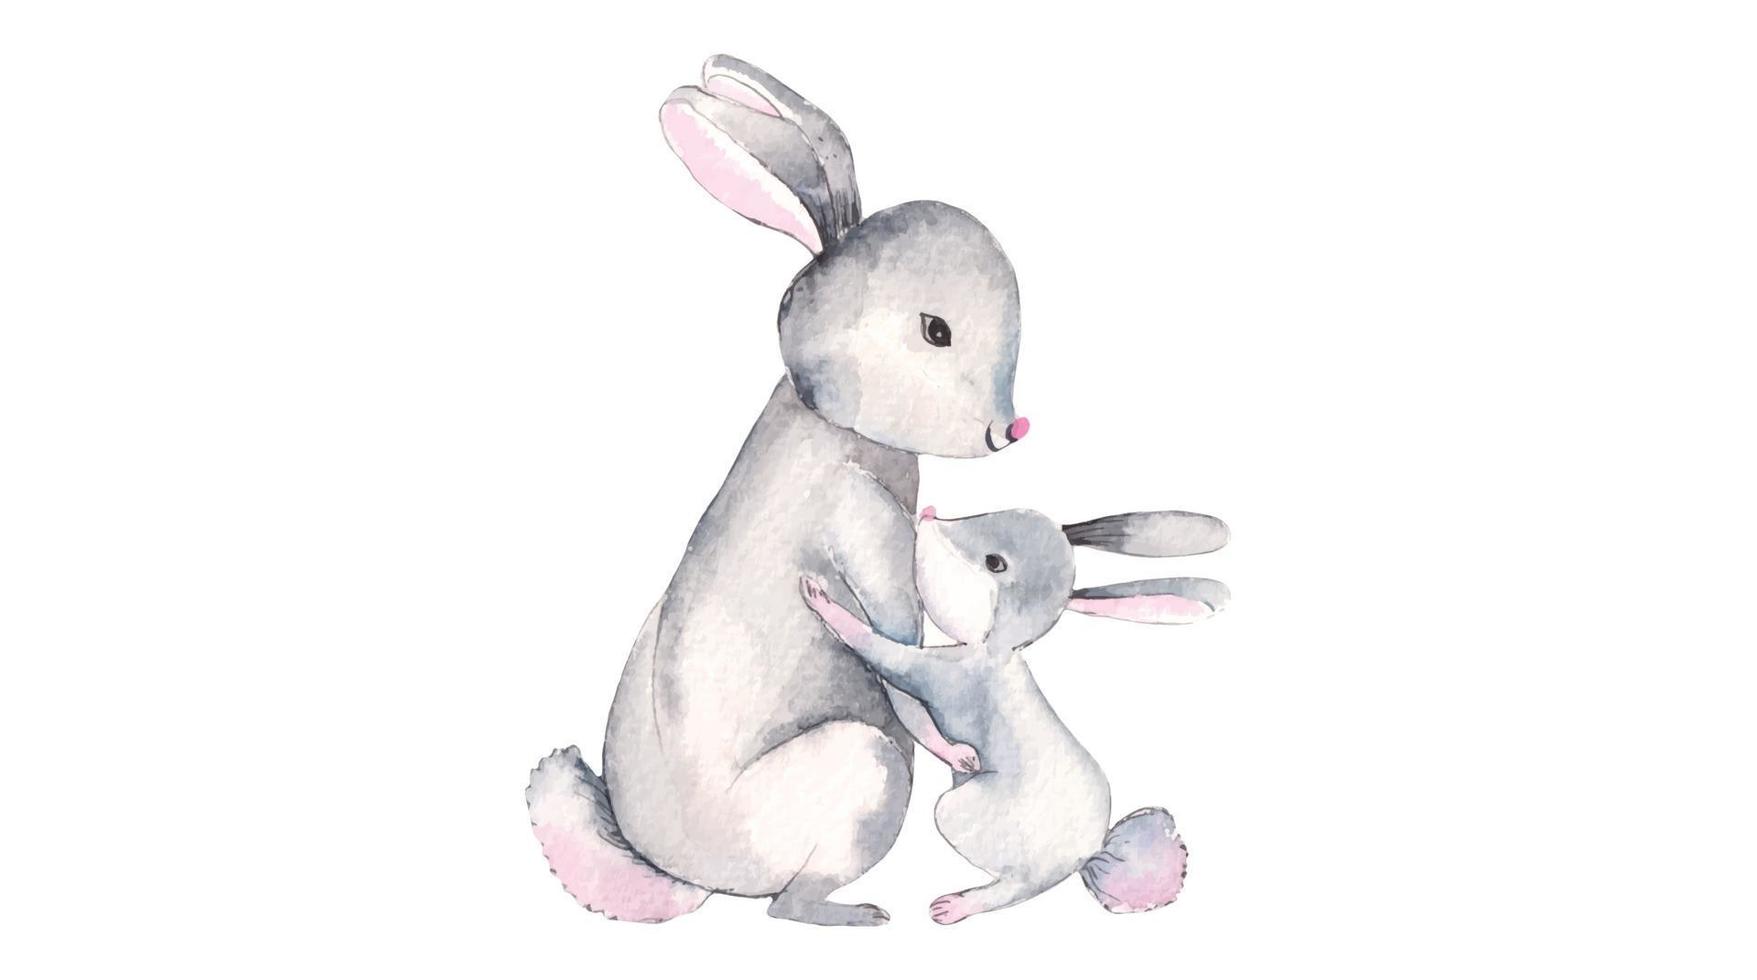 aquarel illustratie van klein konijntje vector